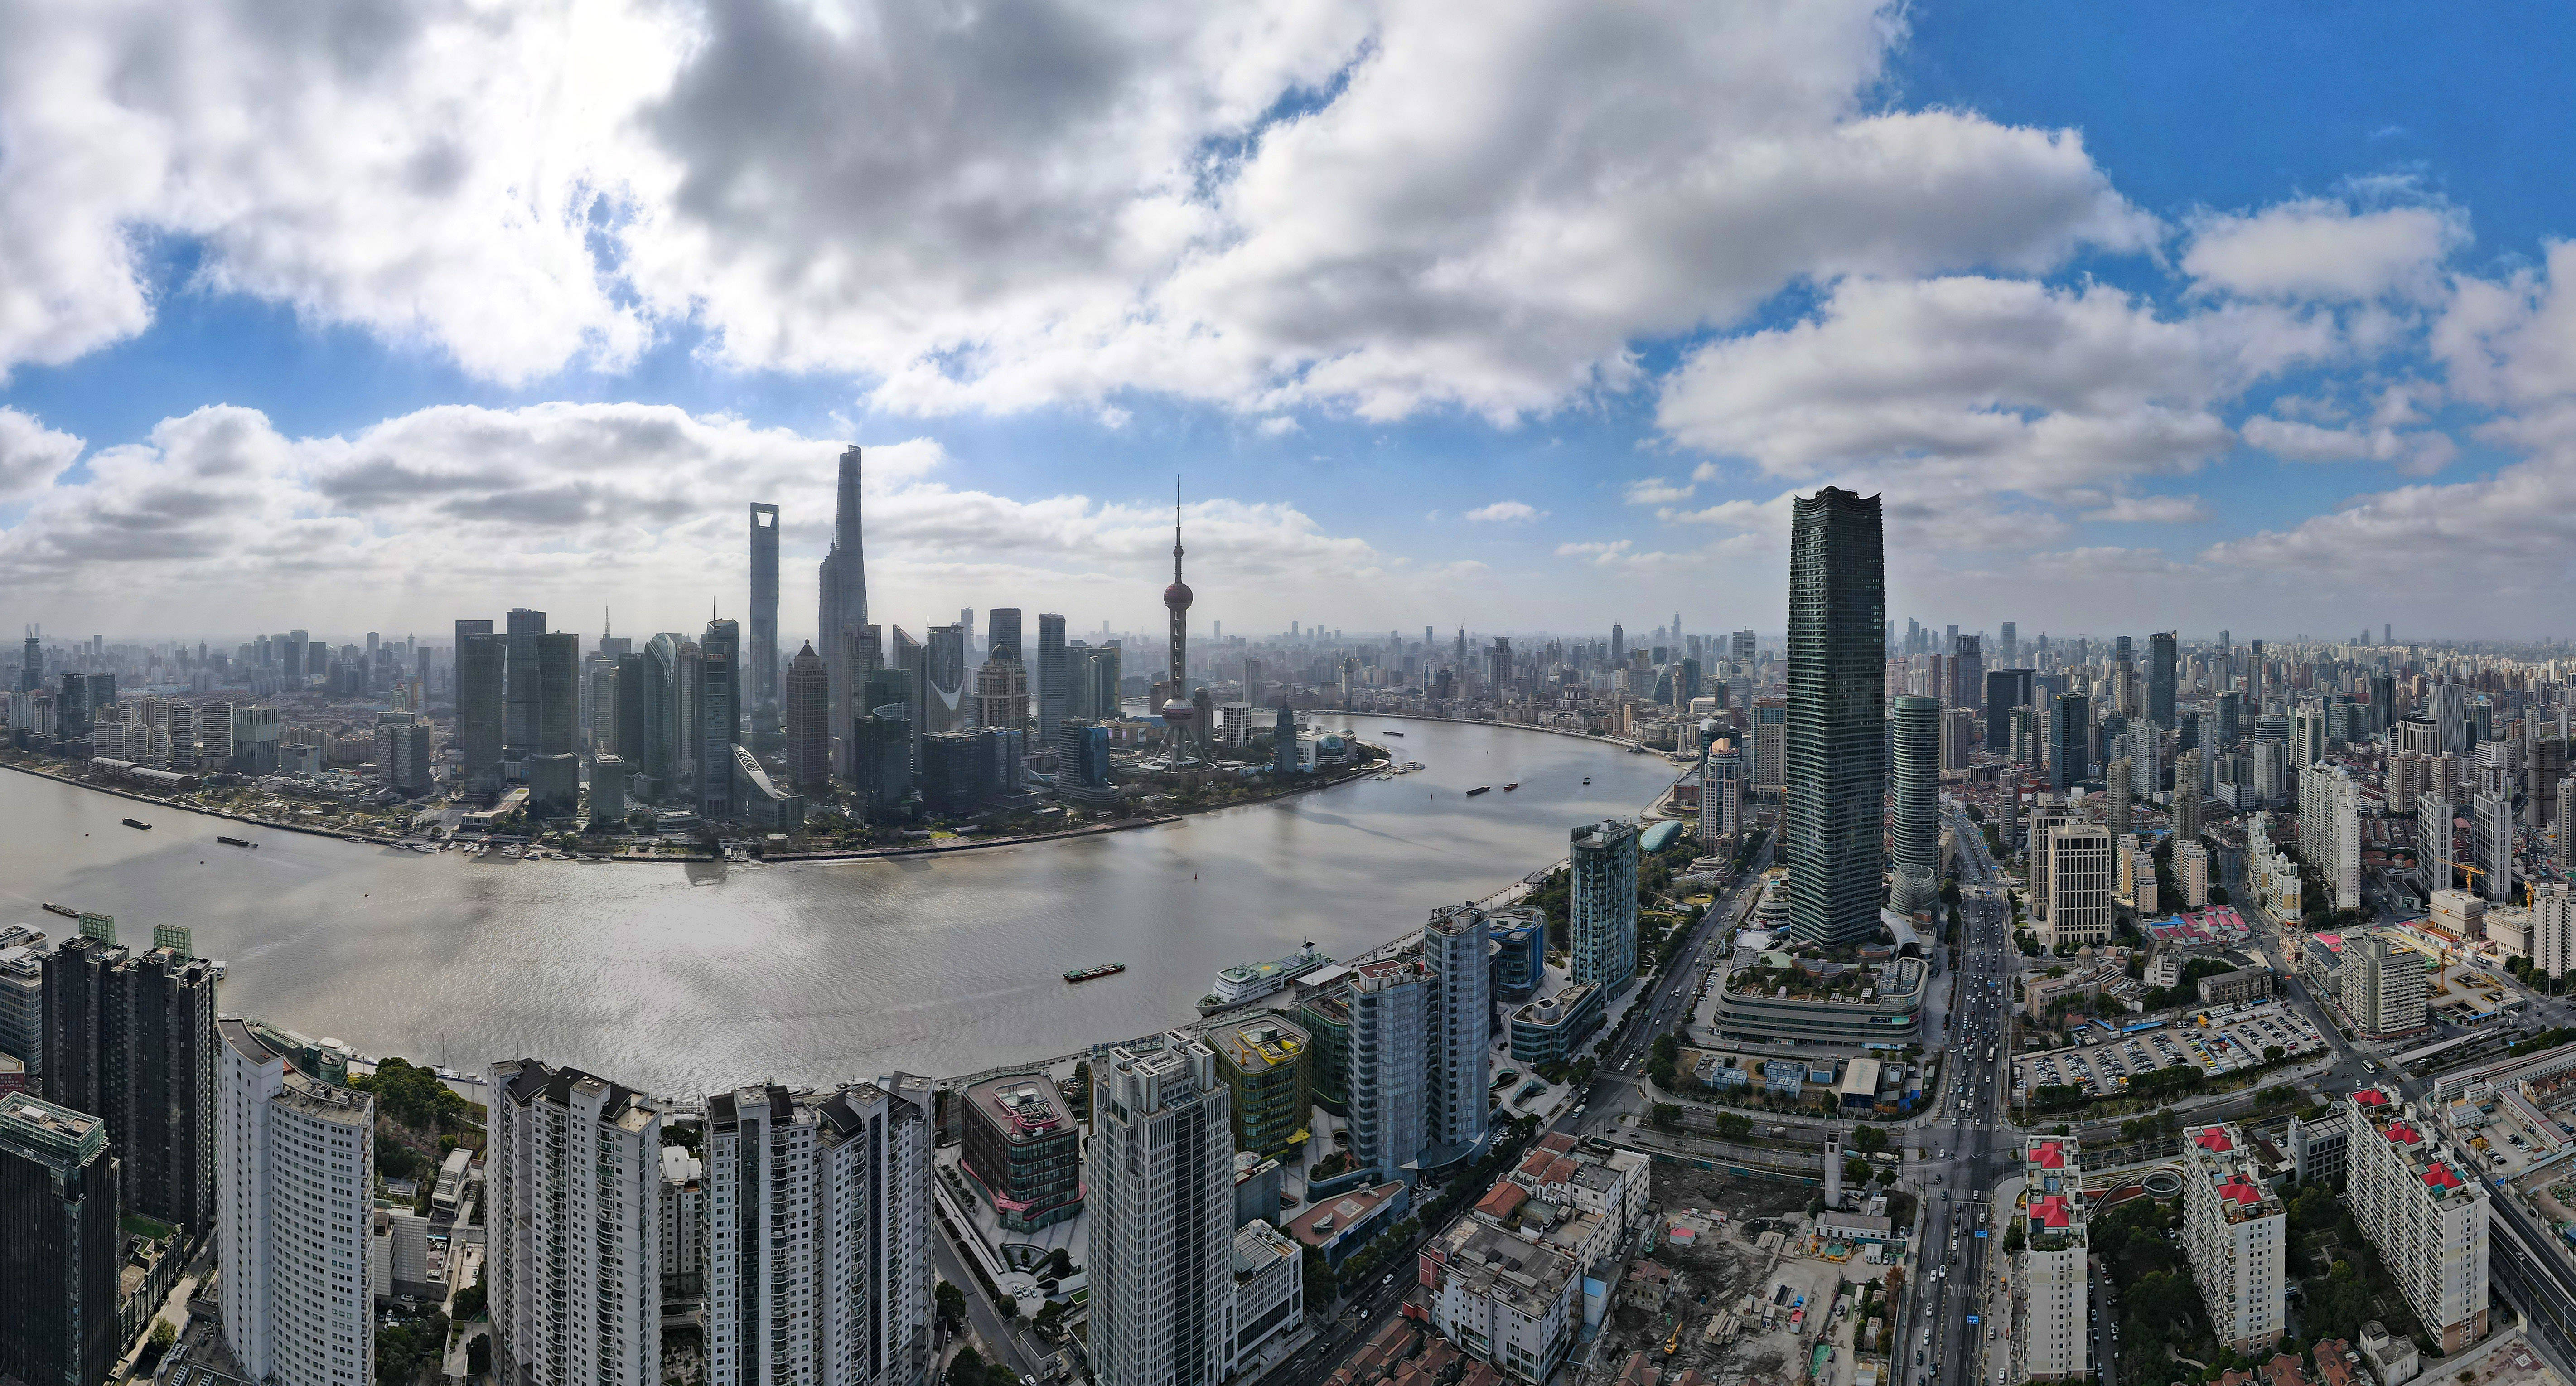 (上海)自由贸易试验区陆家嘴片区(2023年1月10日摄,无人机全景照片)